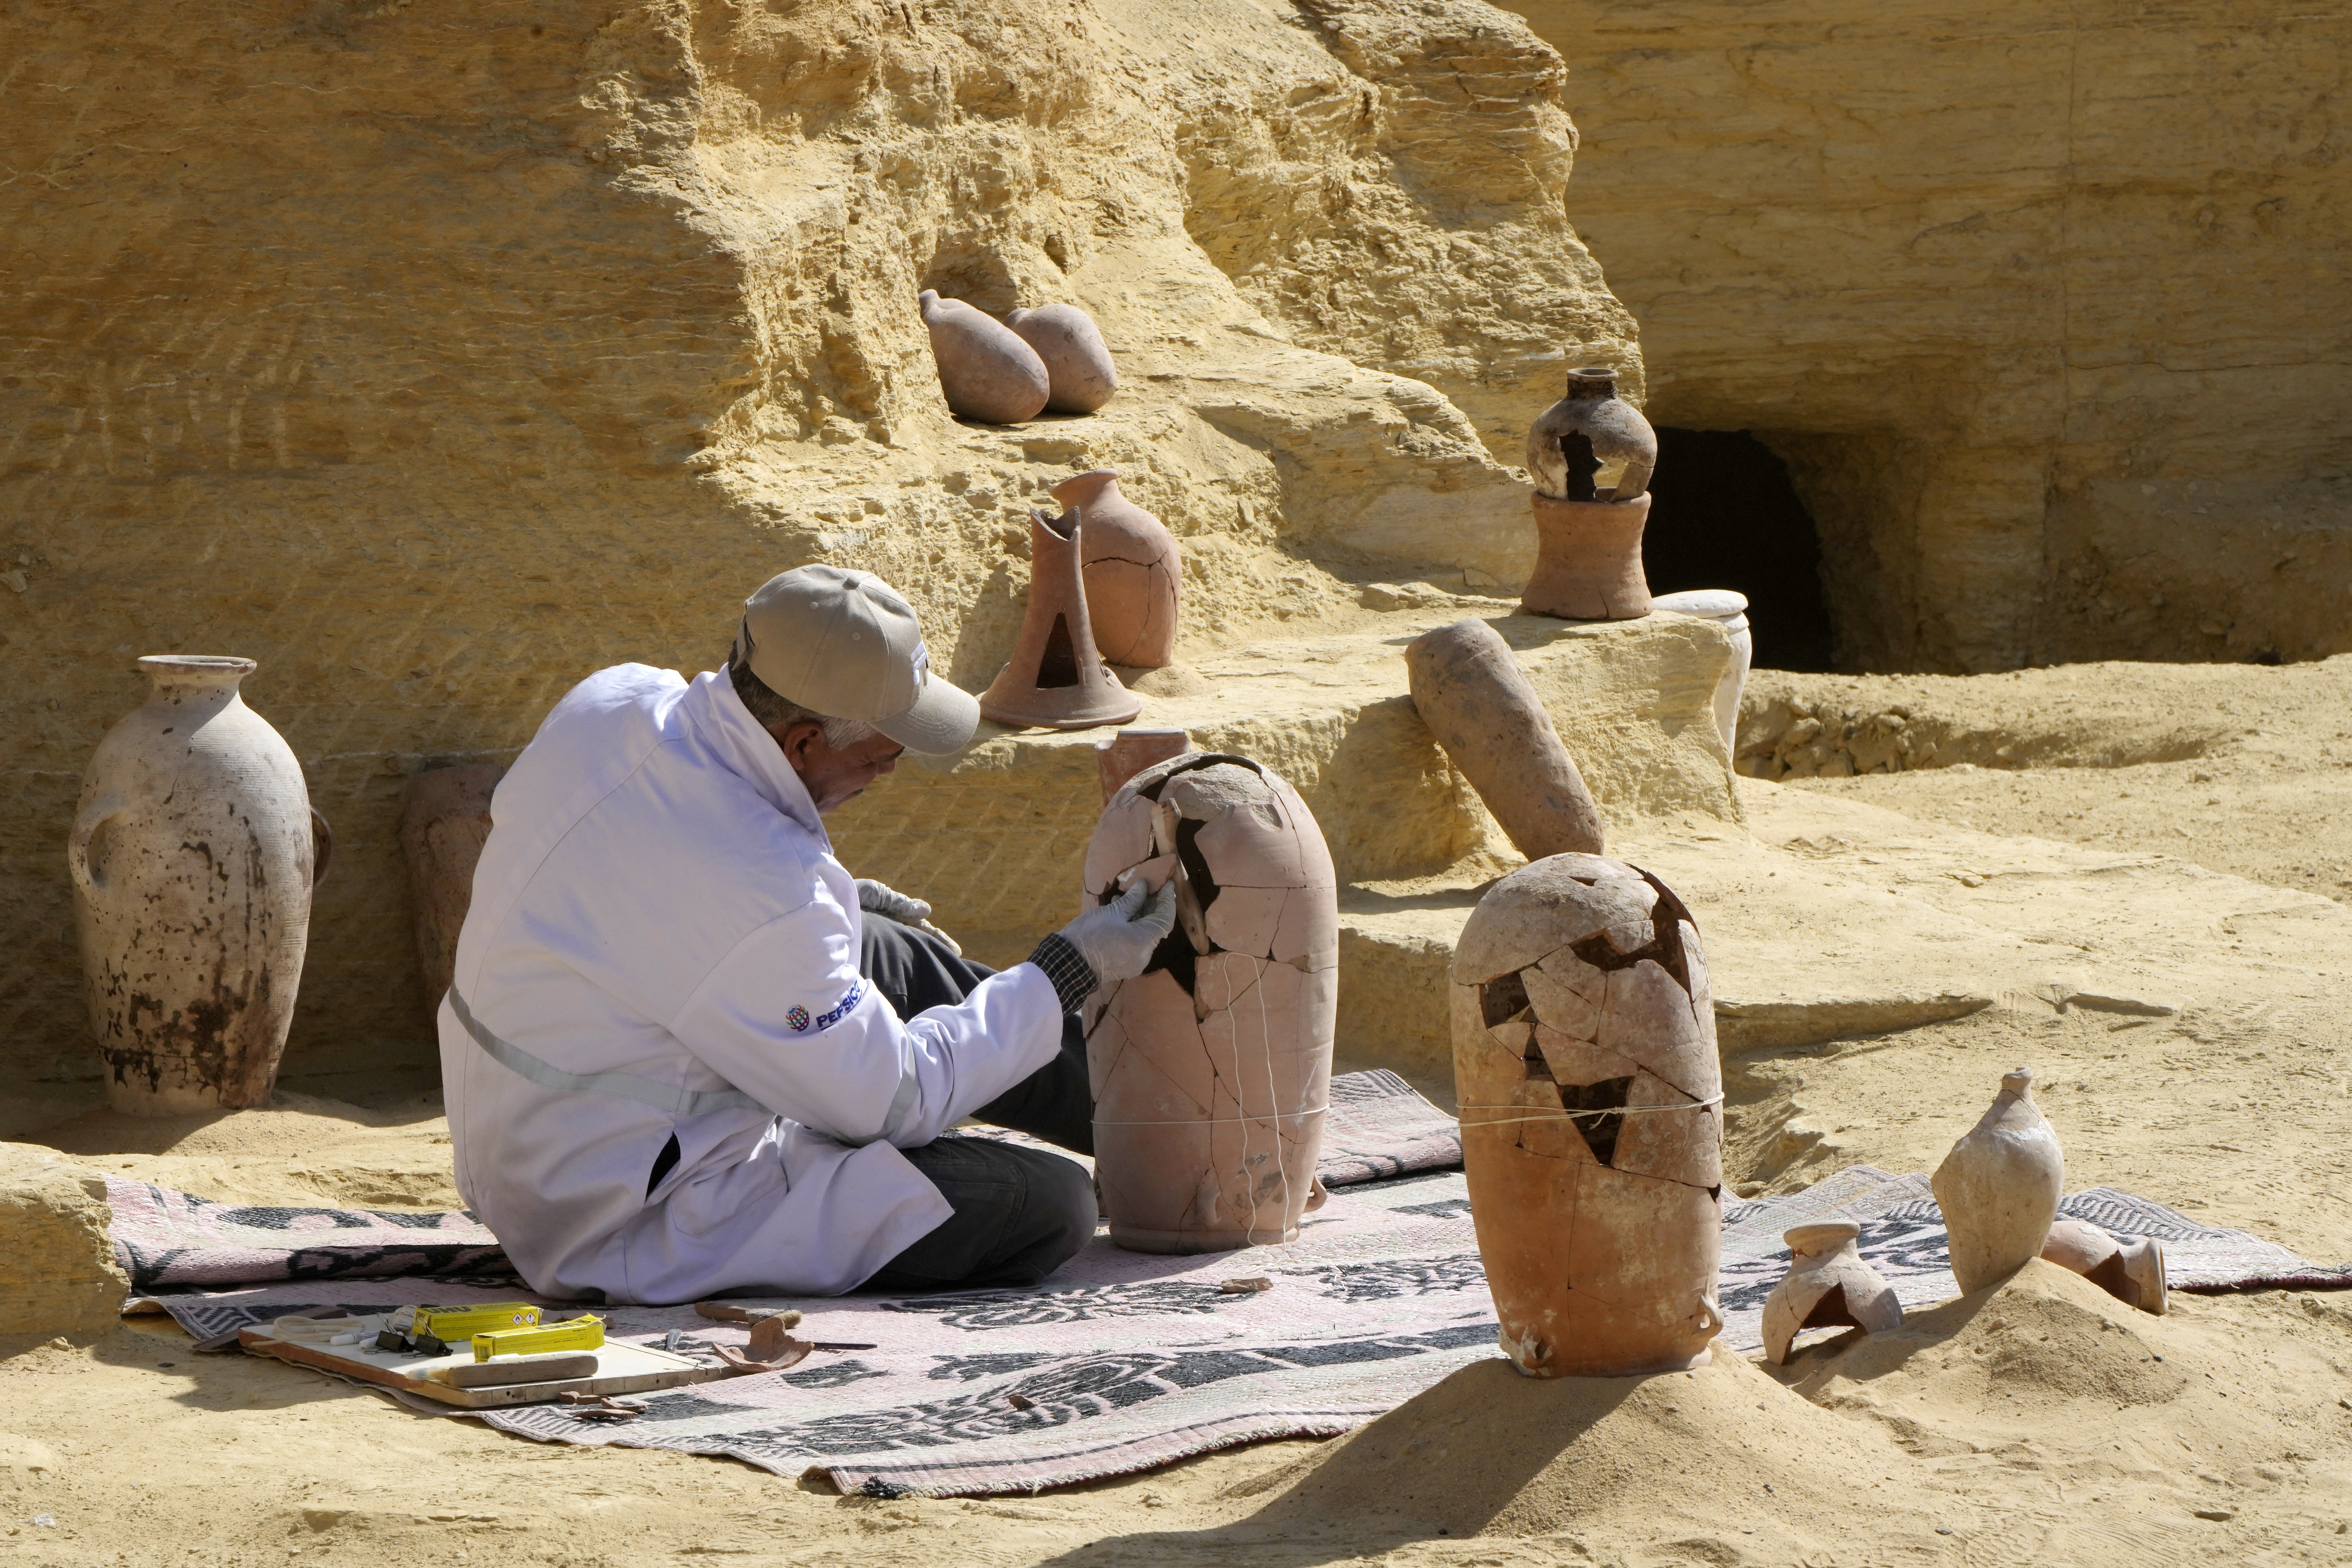 Un arqueólogo trabaja en la restauración de una vasija encontrada en el sitio (Foto AP/Amr Nabil)